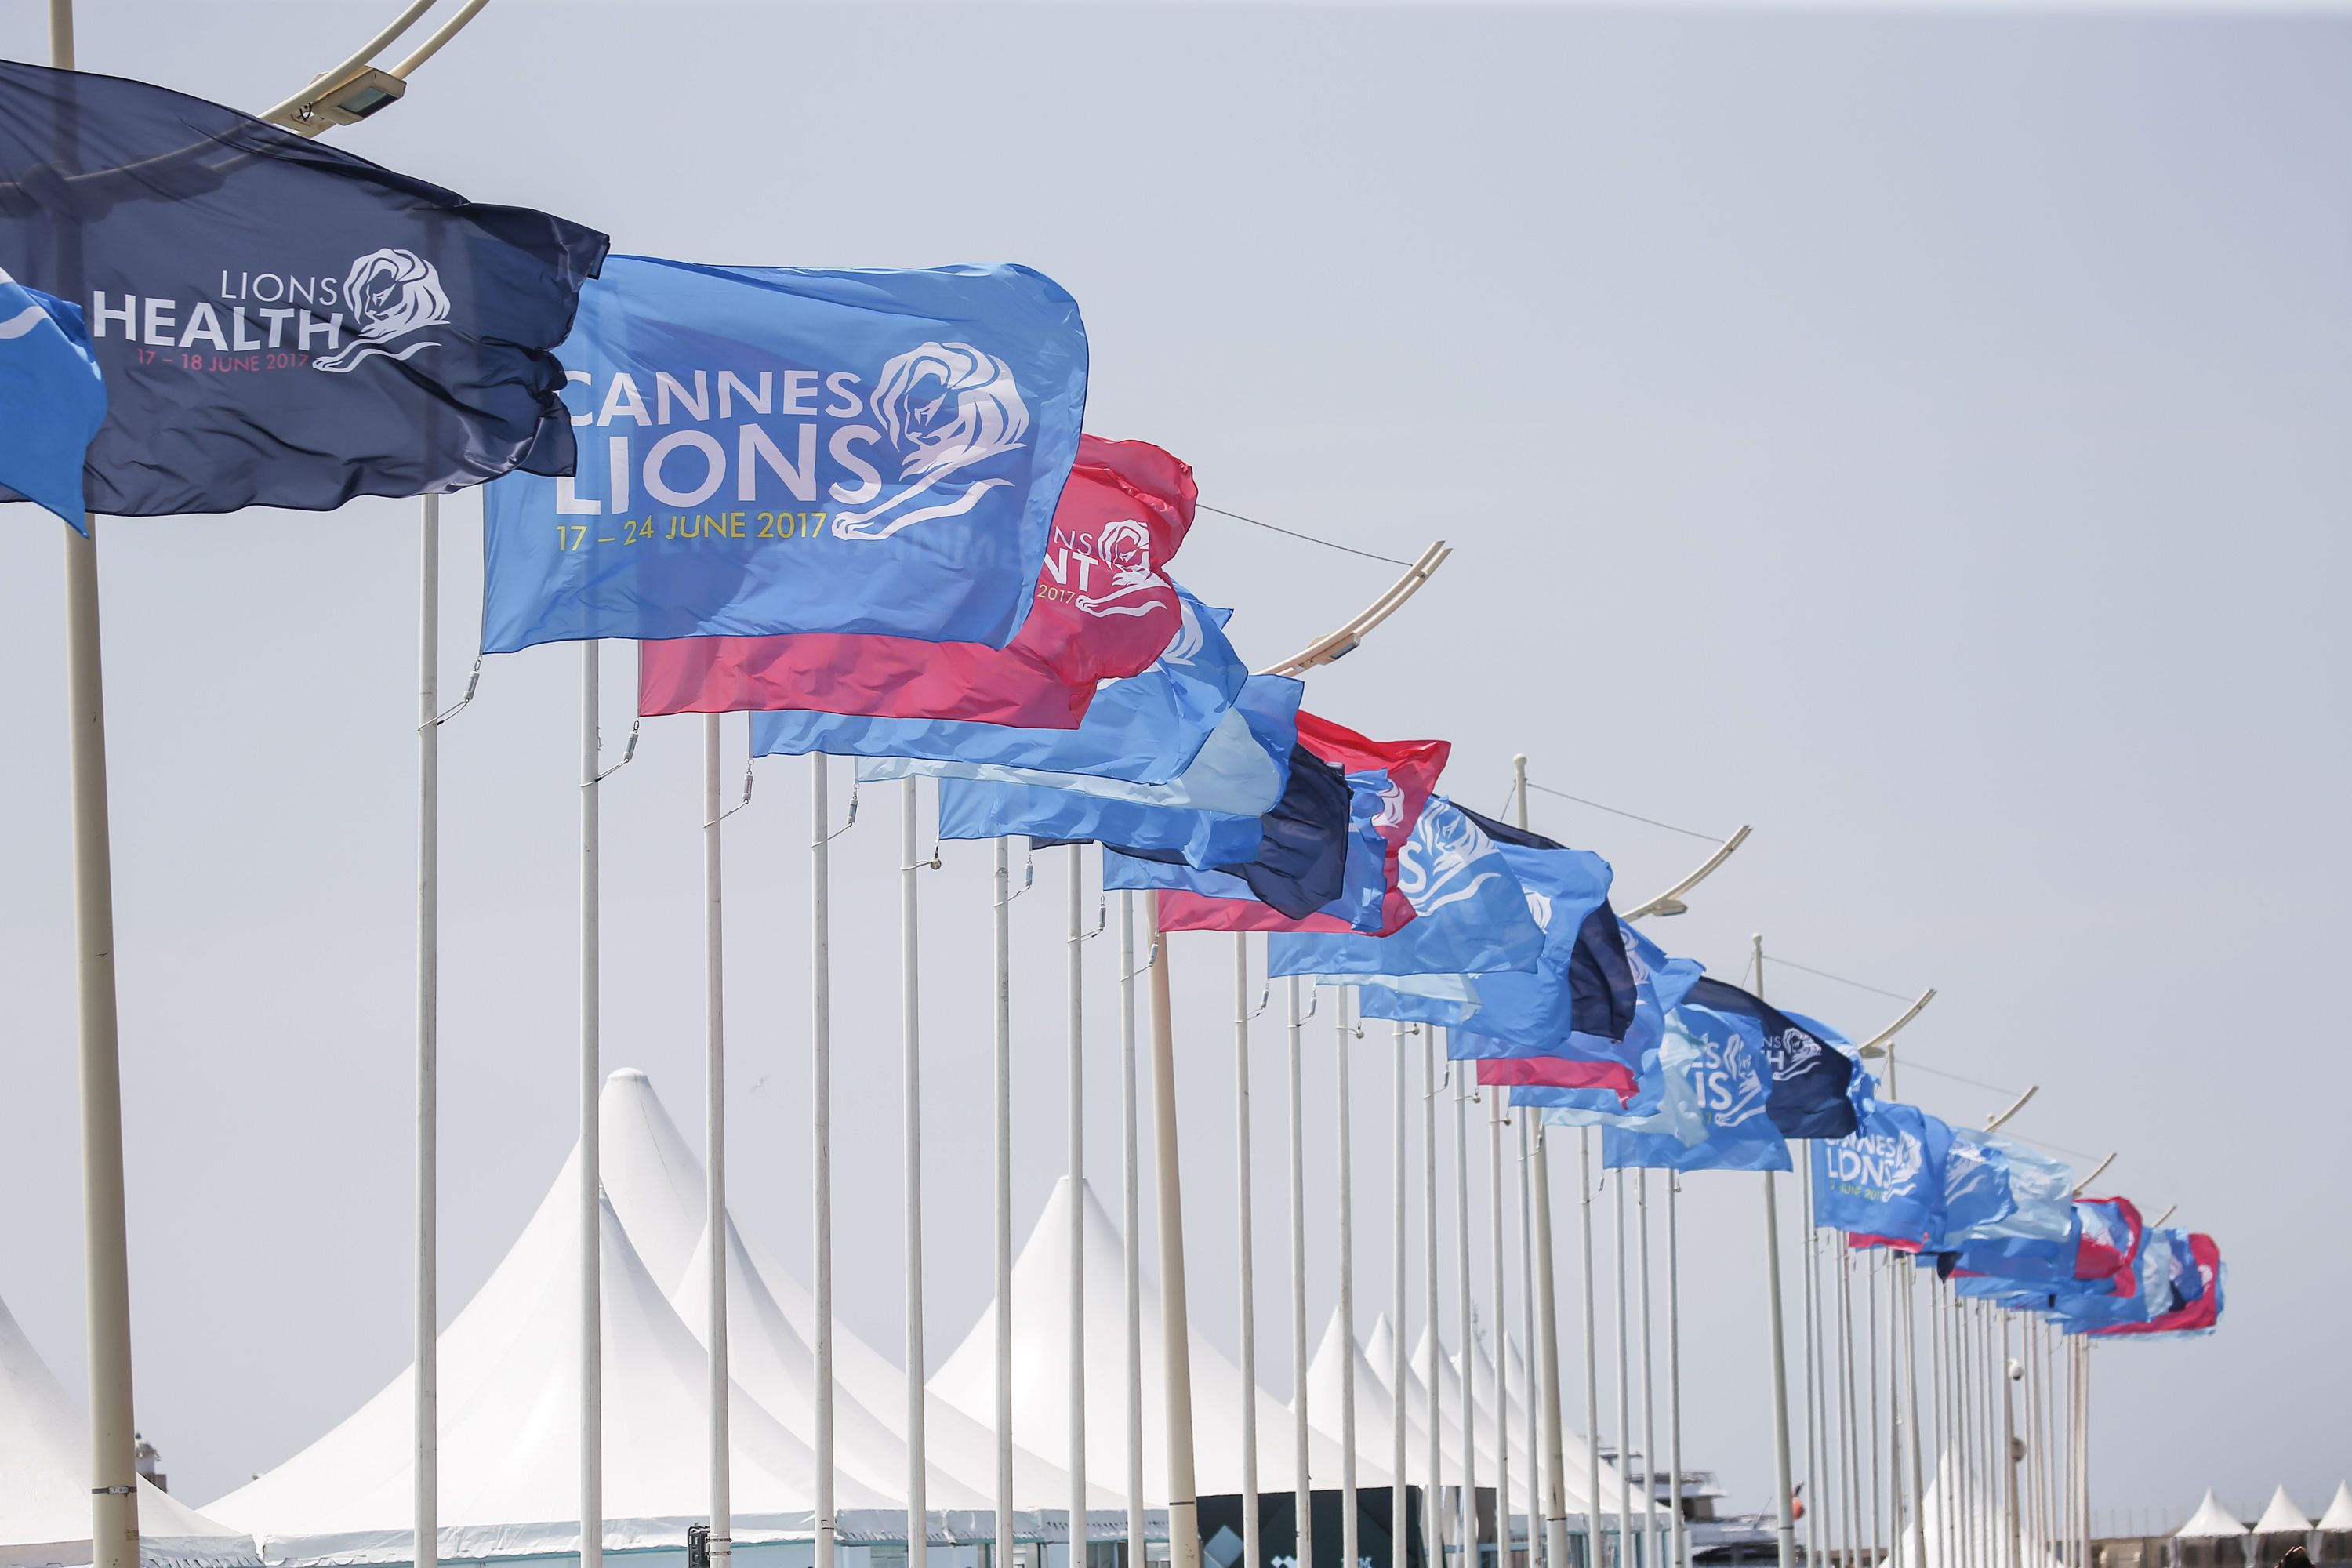 Cannes Lions 2017 -  враження від Каннських левів